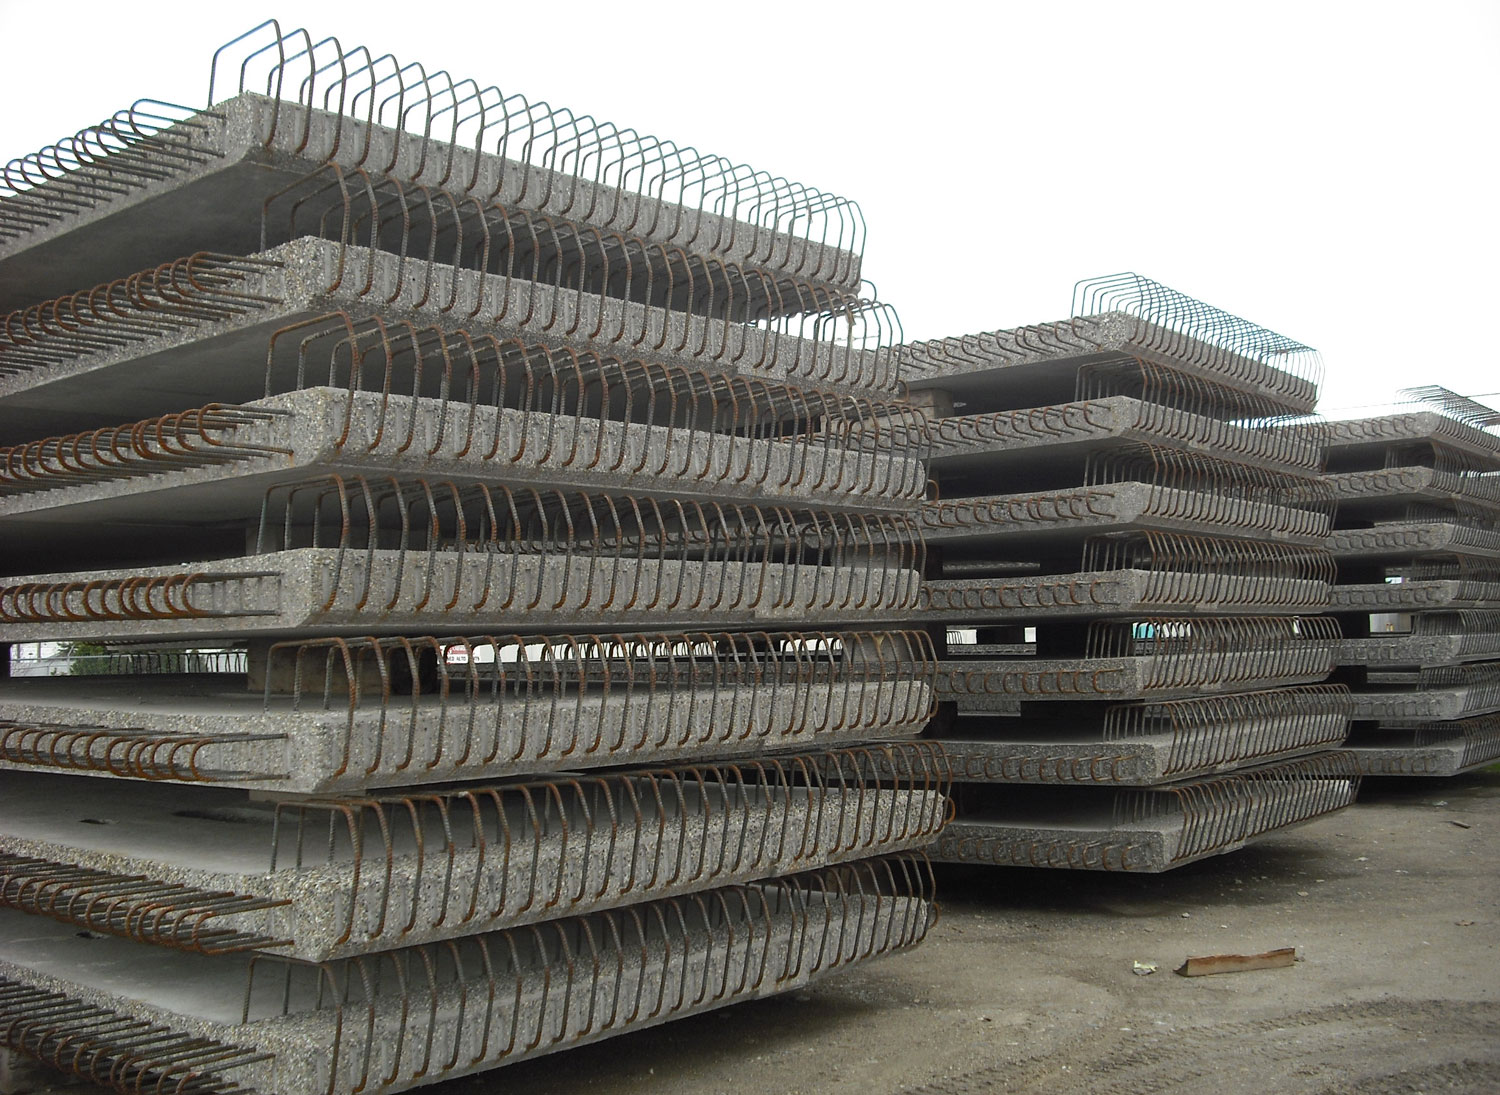 Precast concrete deck panels for highway bridge construction - project by Rapid-Span